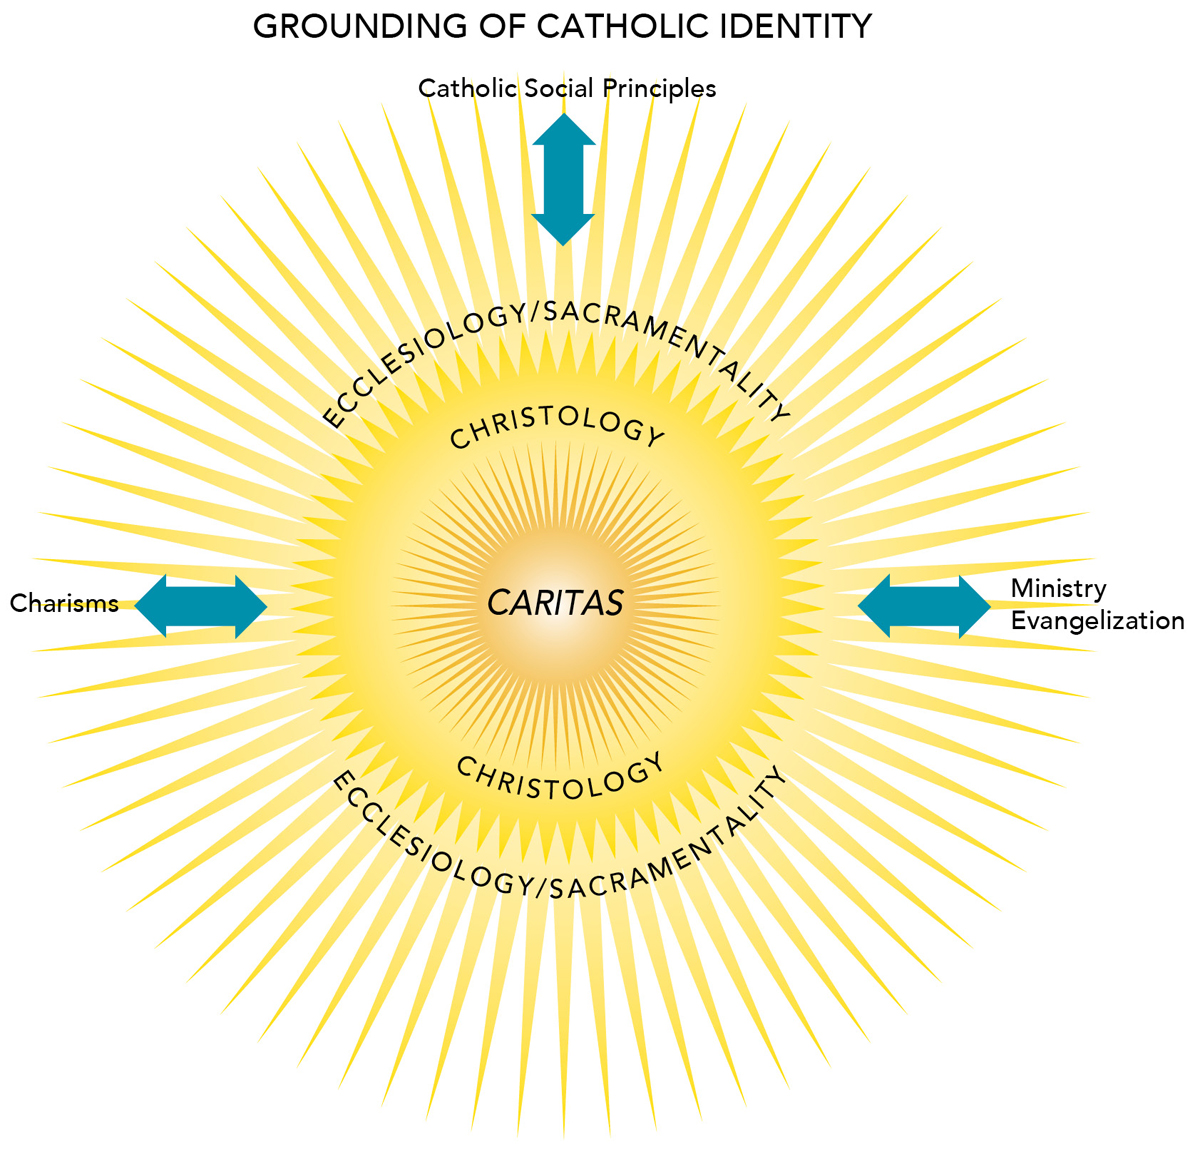 Grounding of Catholic Identity